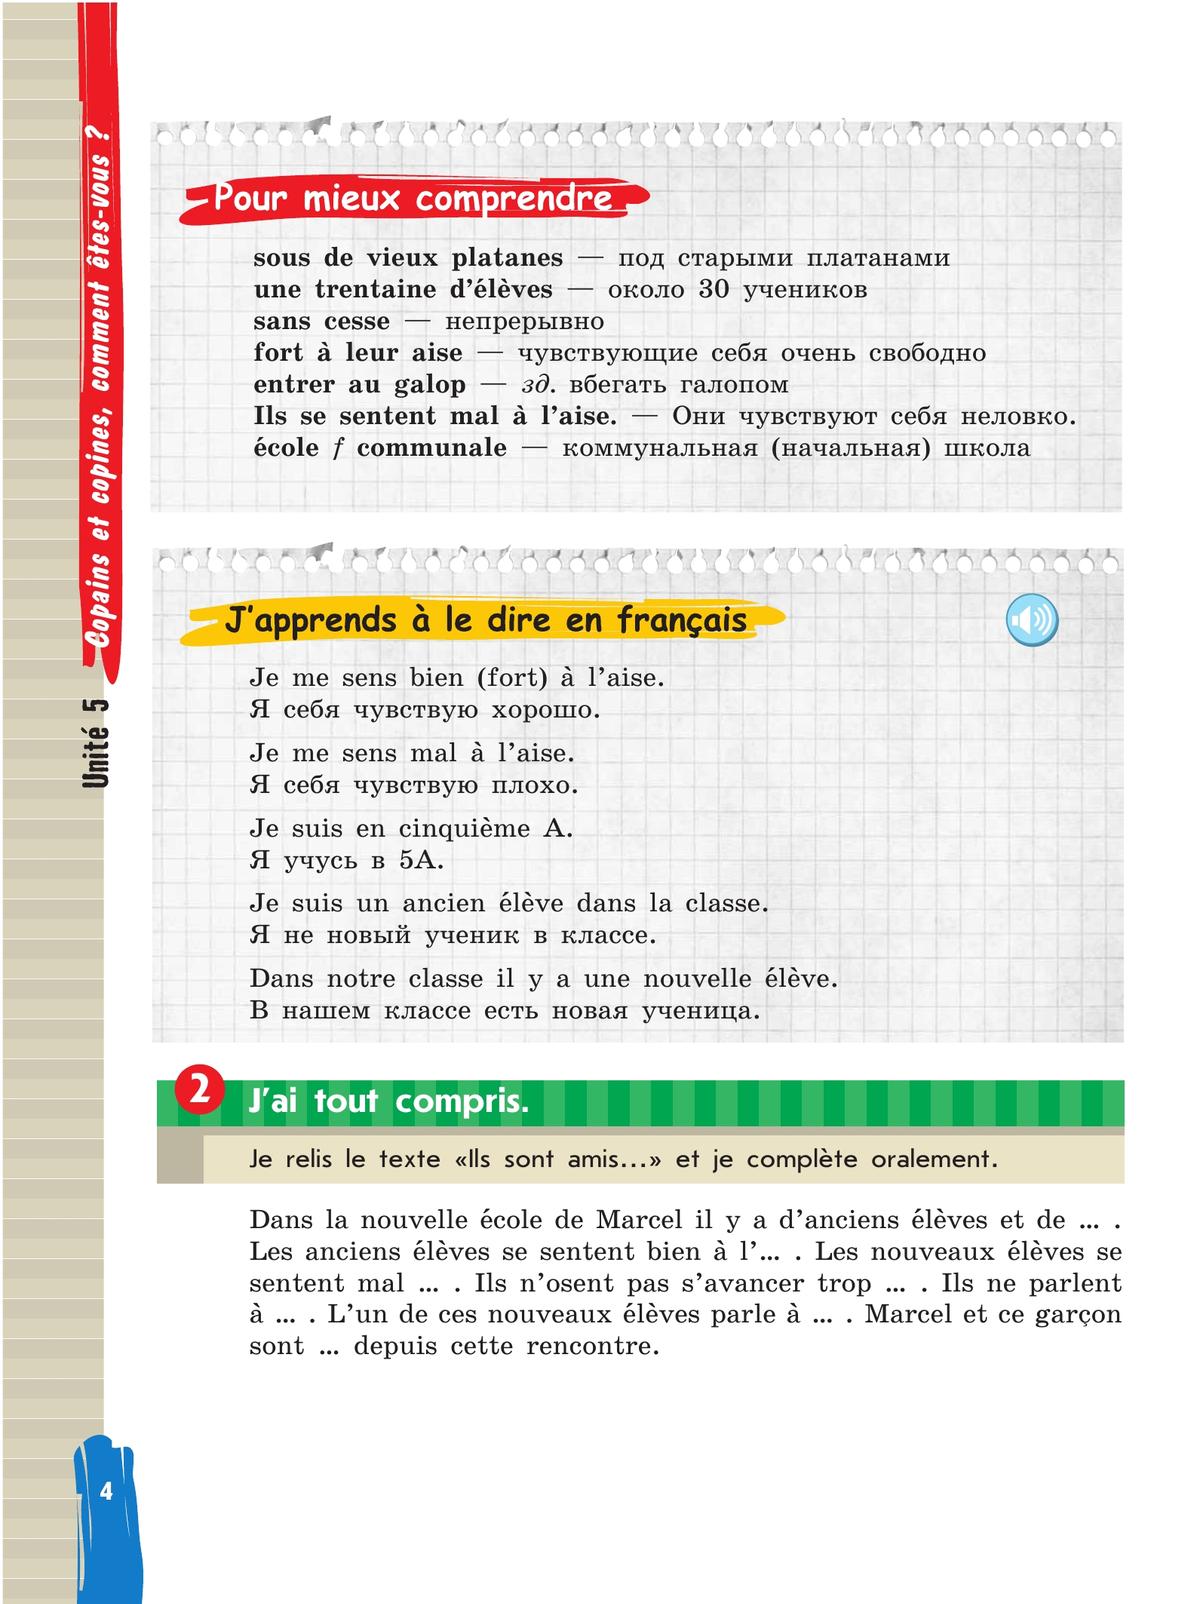 Французский язык. 5 класс. Учебник. В 2 ч. Часть 2 7